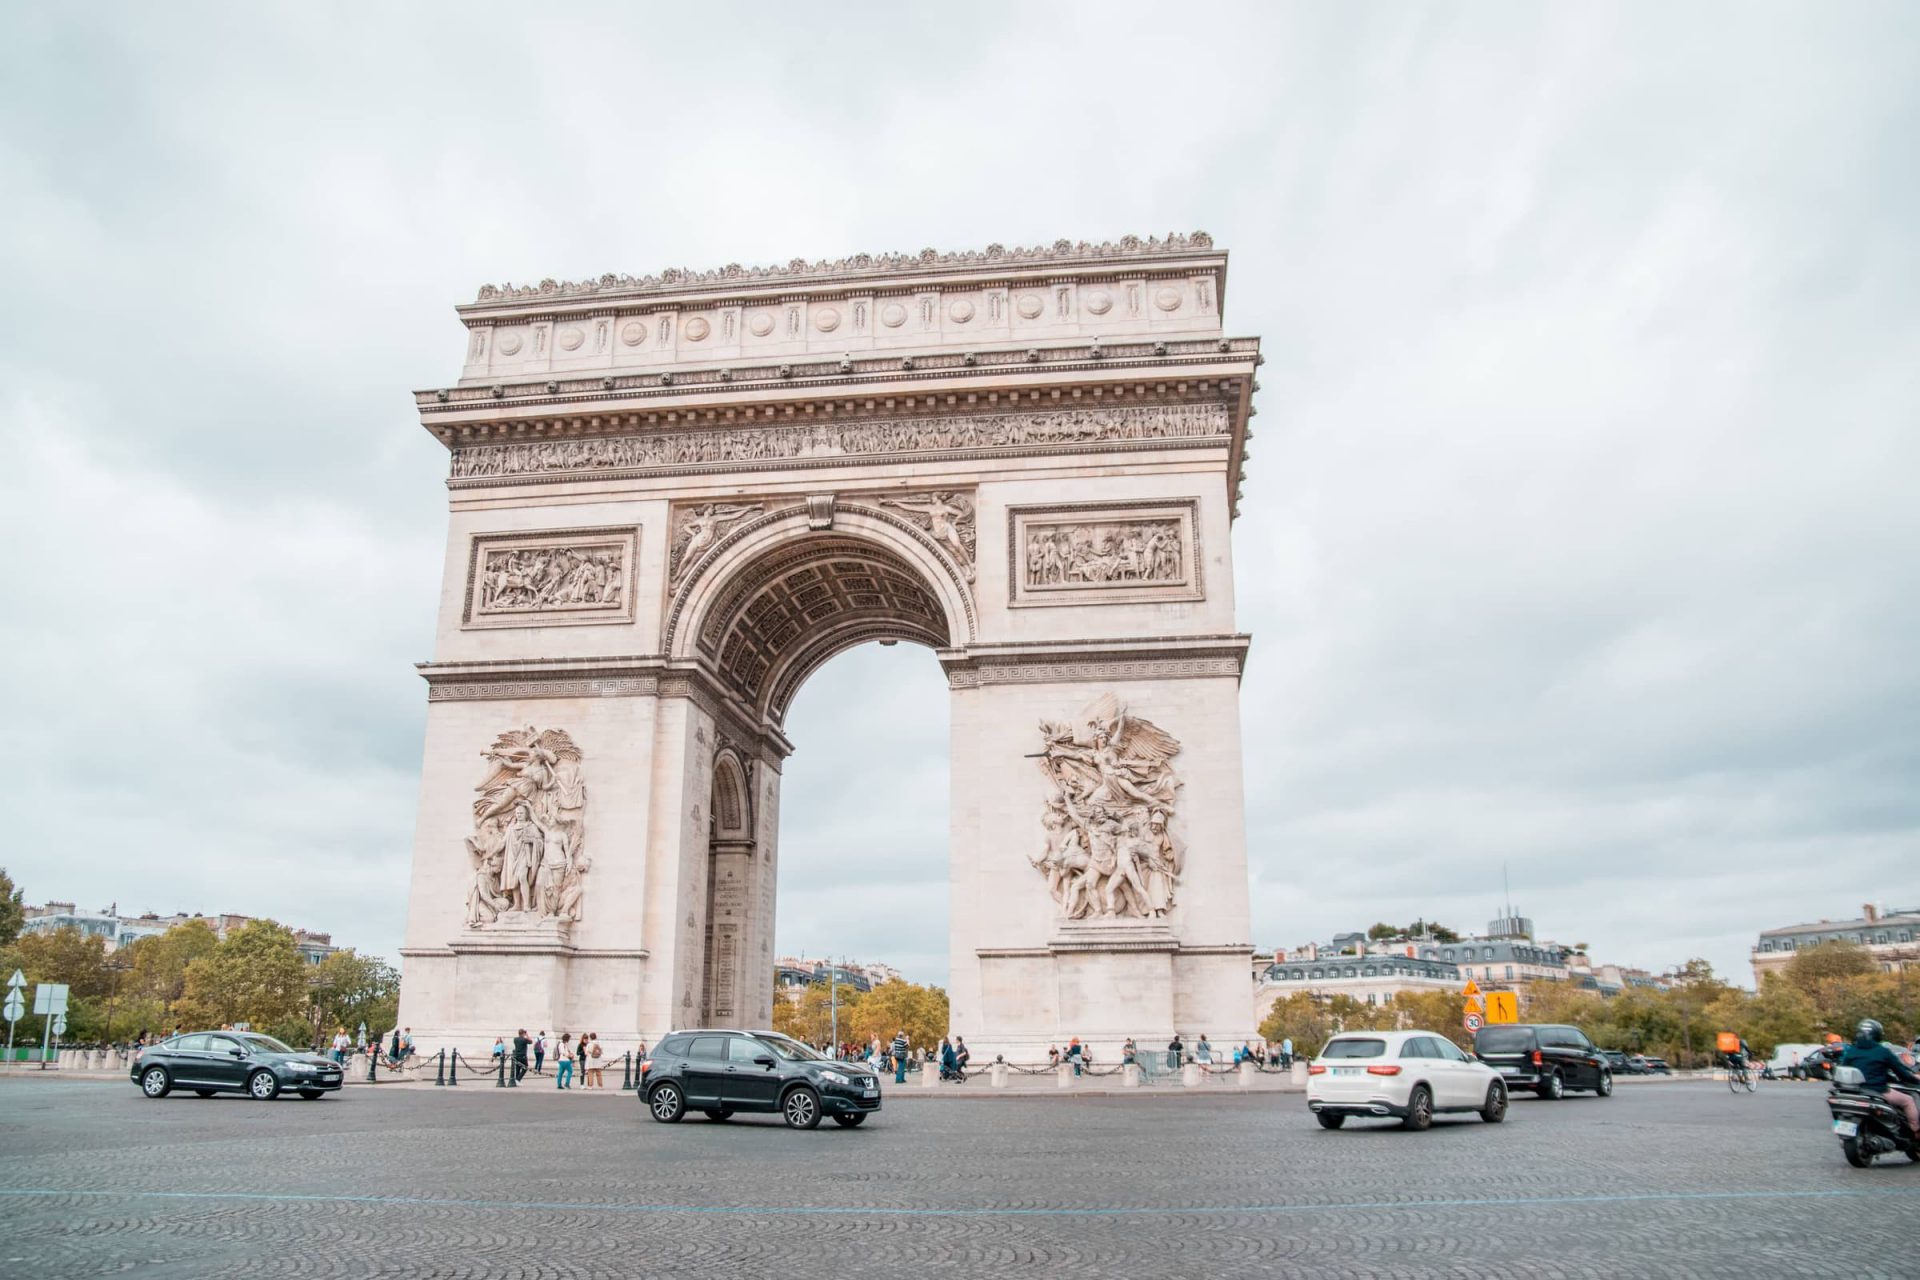 ParisCentrum31 - Wat te doen in Parijs: 55 tips voor een leuke stedentrip (+ budget tips!)